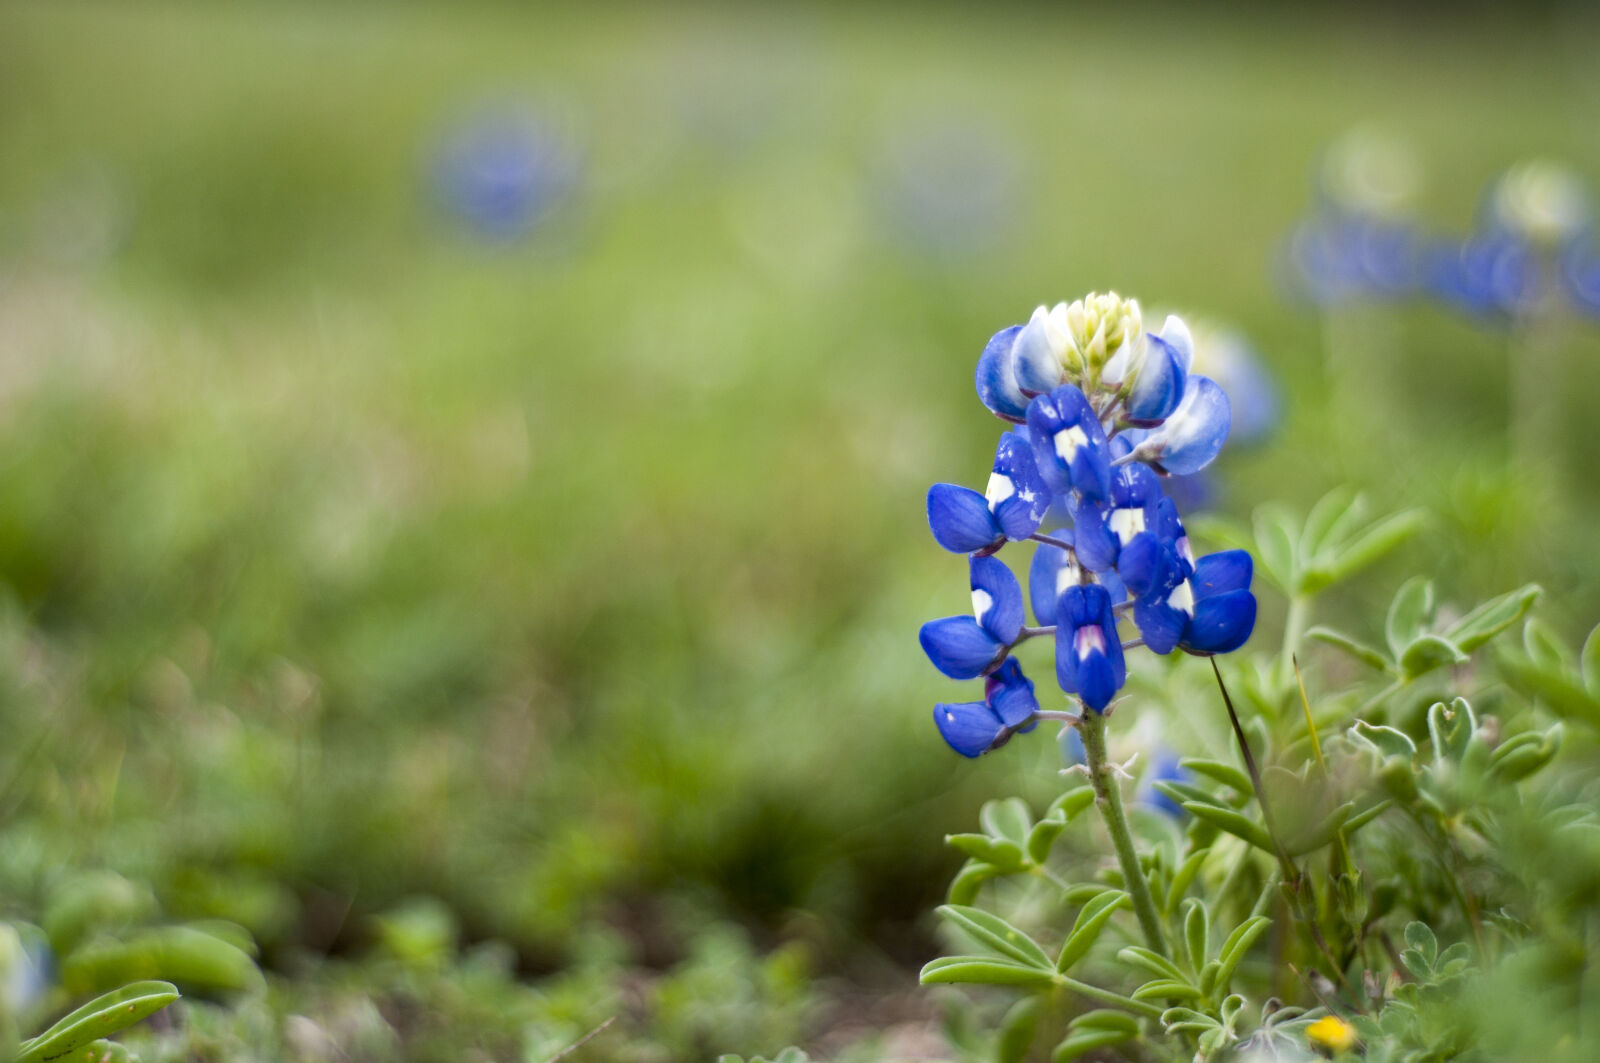 Nikon AF Nikkor 50mm F1.8D sample photo. Bloom, blooms, blue, blue photography